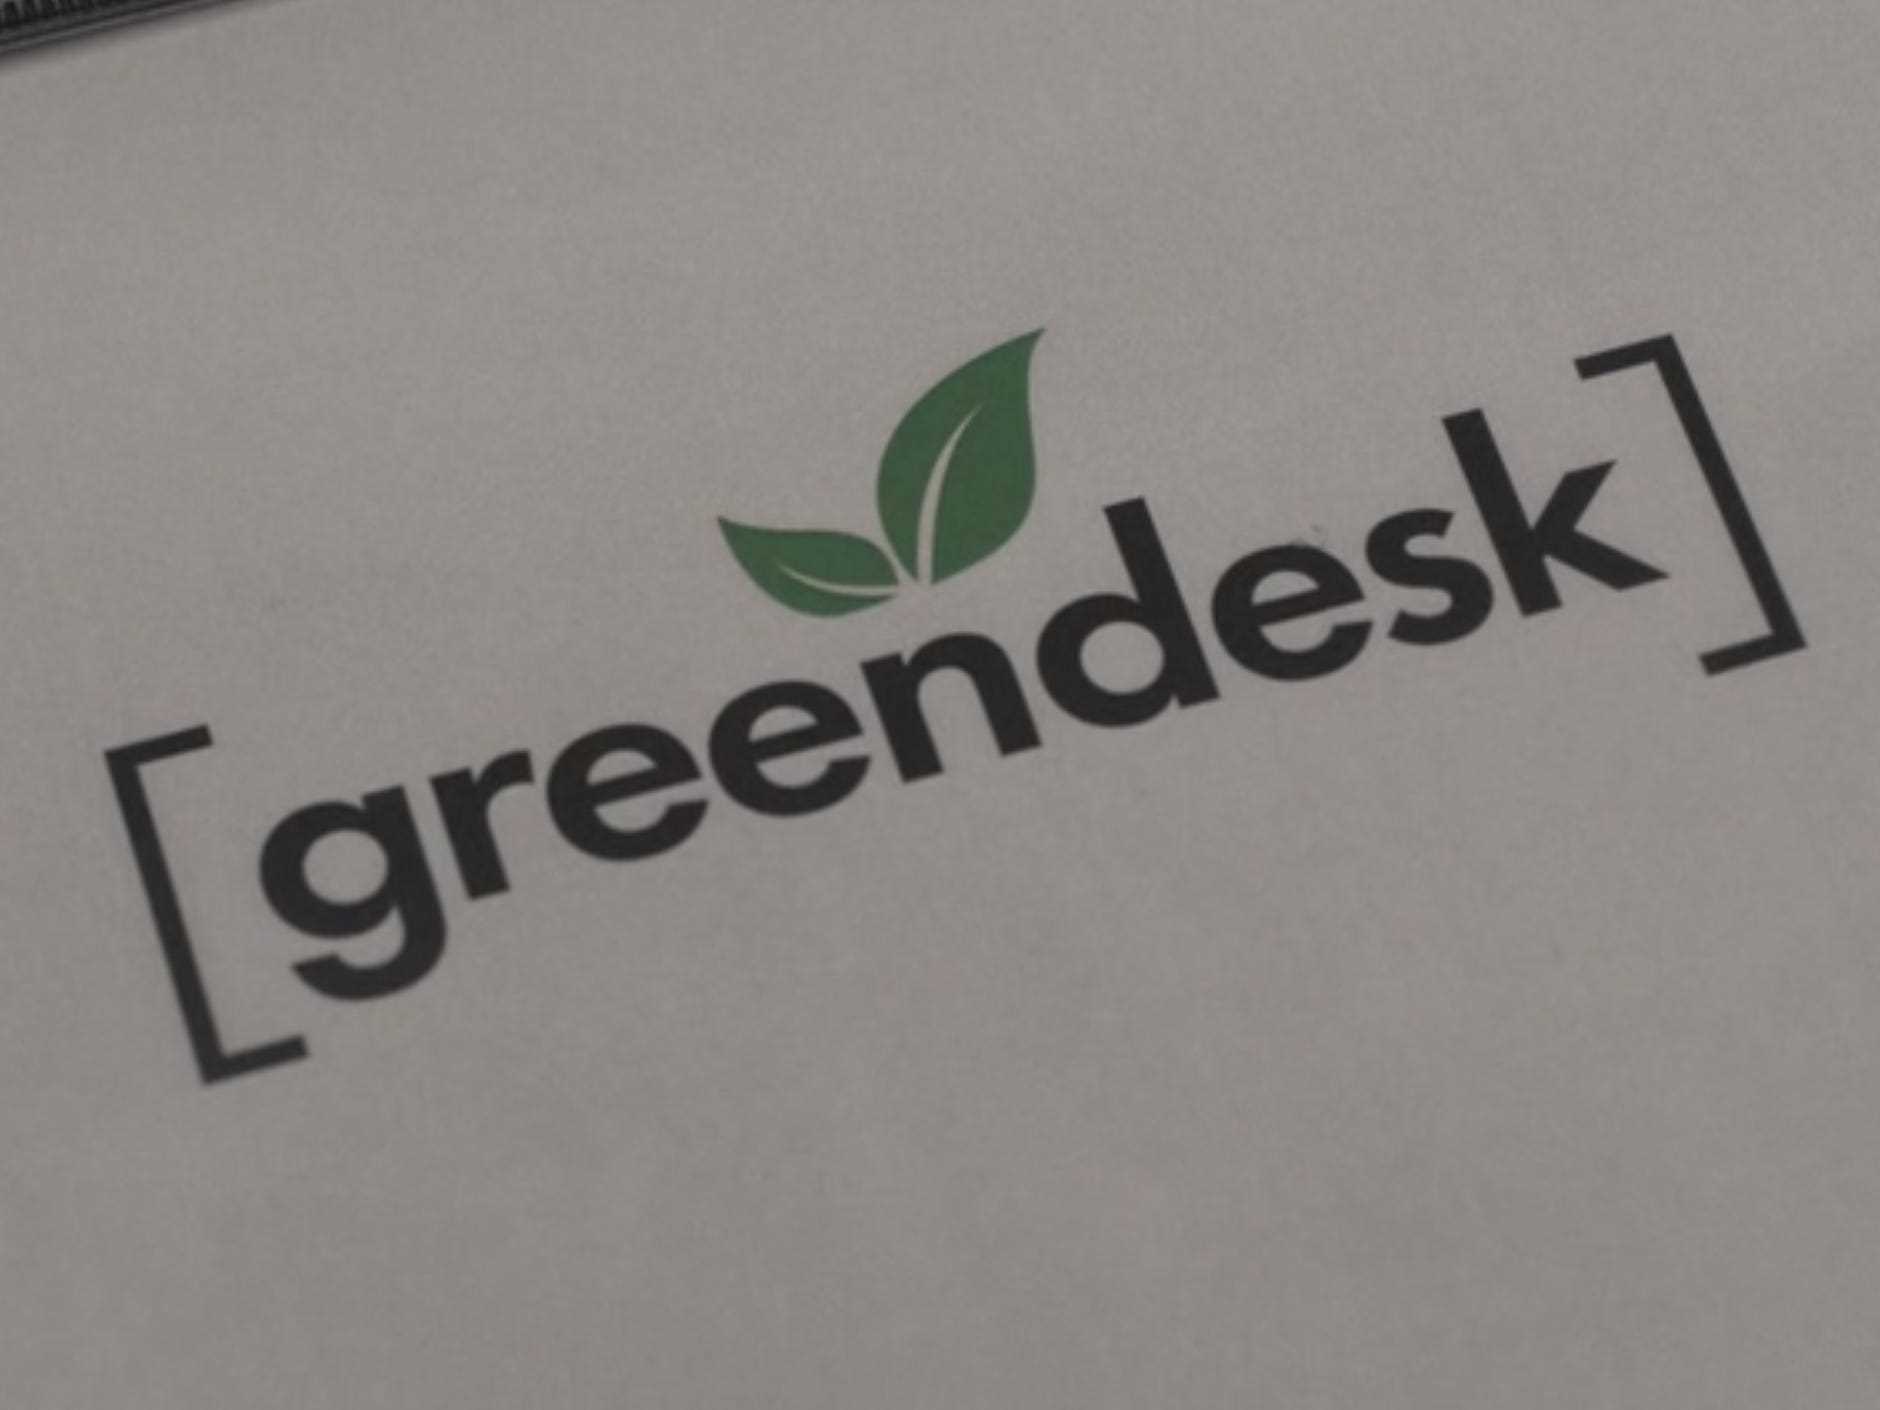 ein Blatt Papier, auf dem Greendesk steht, mit einem kleinen Blattmuster über dem n und Klammern darum herum